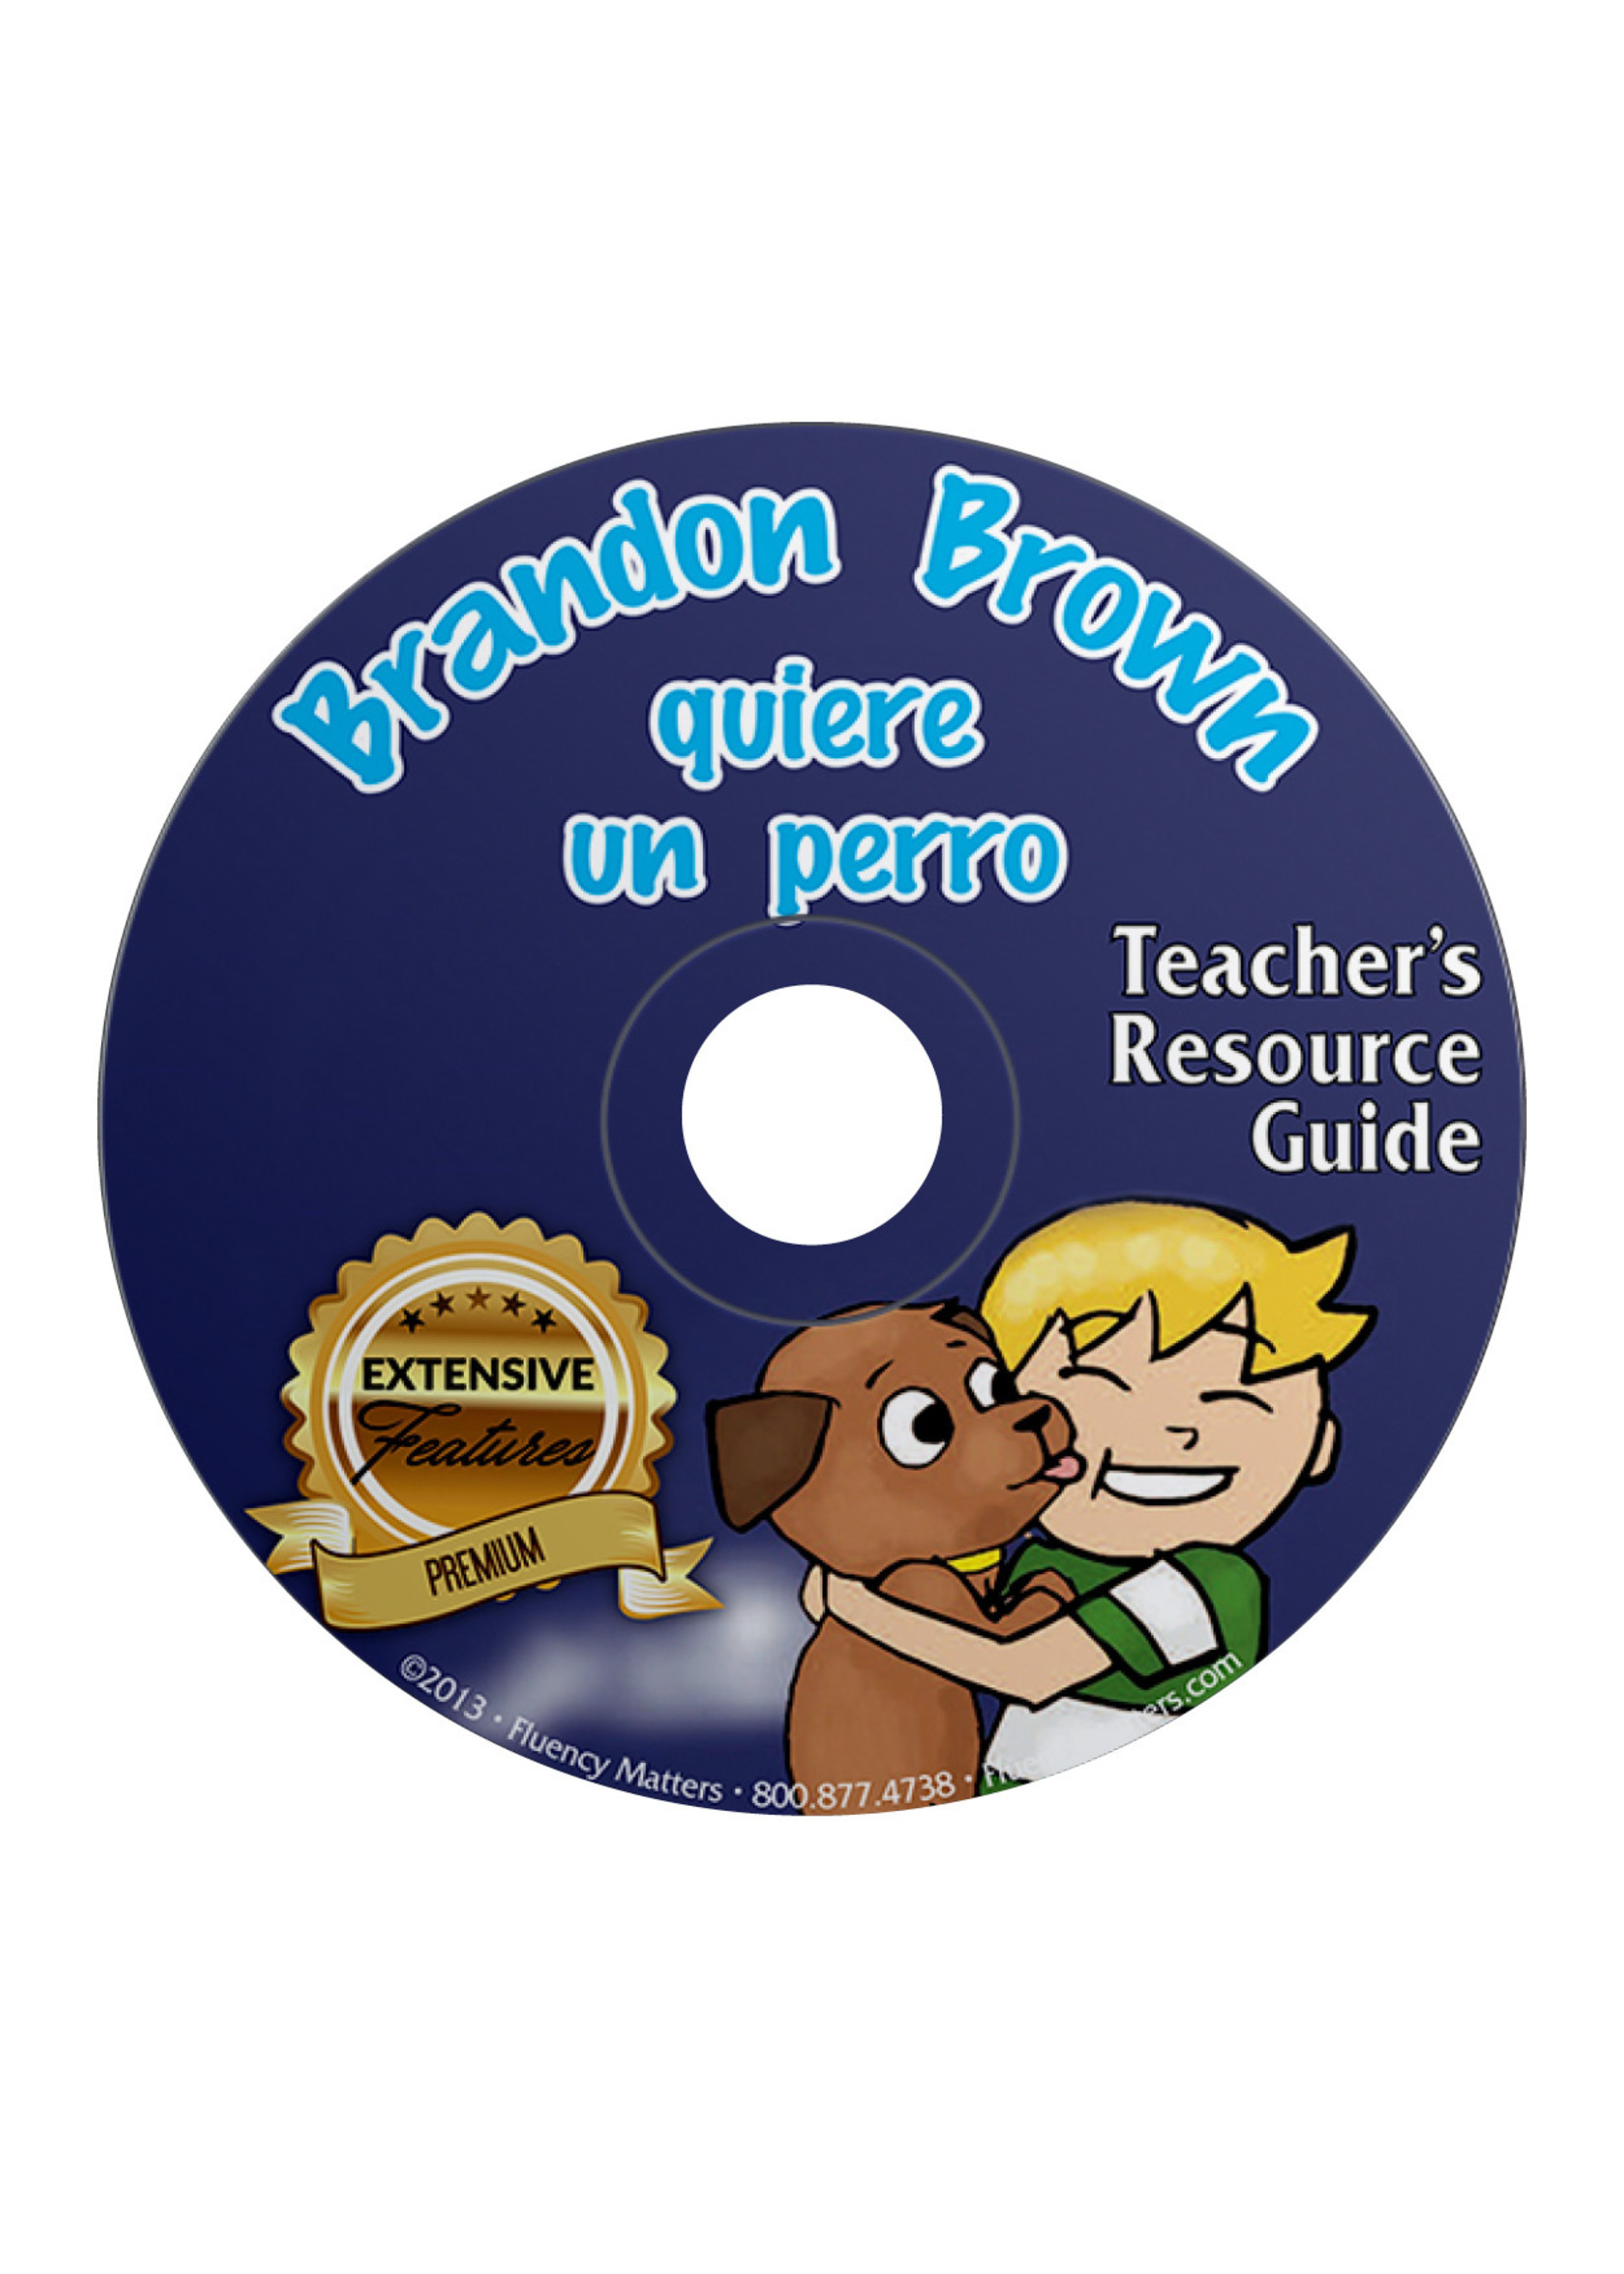 Brandon Brown quiere un perro - Teacher's Guide on CD